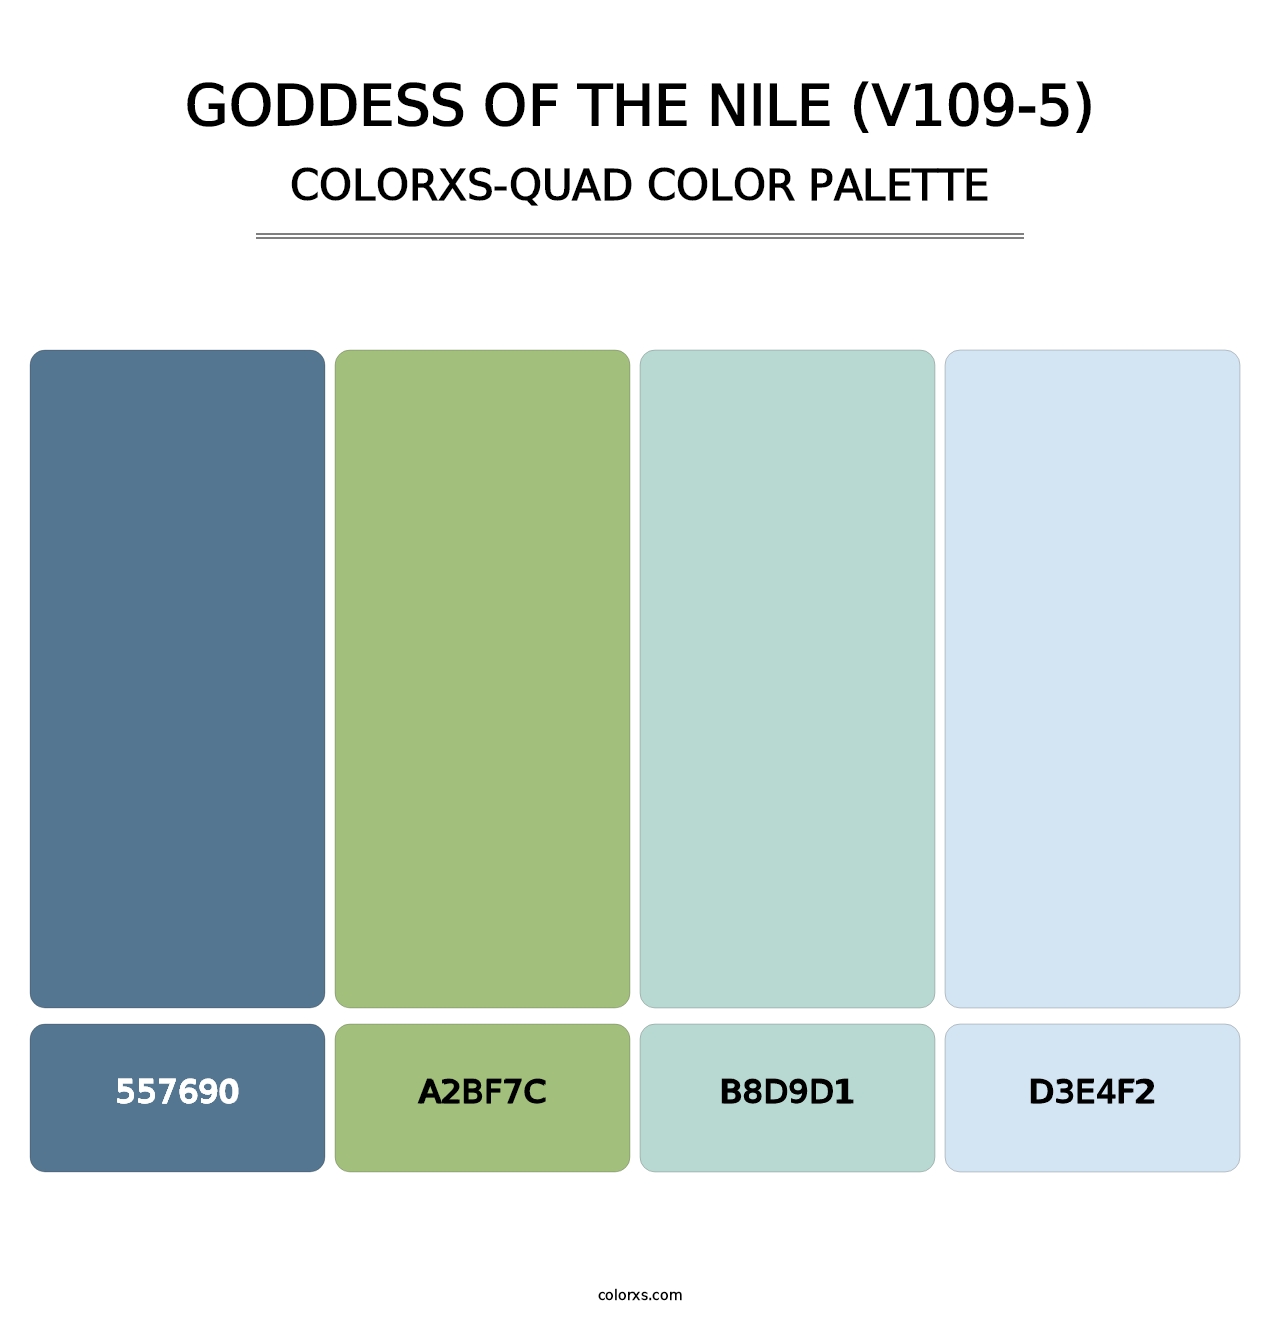 Goddess of the Nile (V109-5) - Colorxs Quad Palette